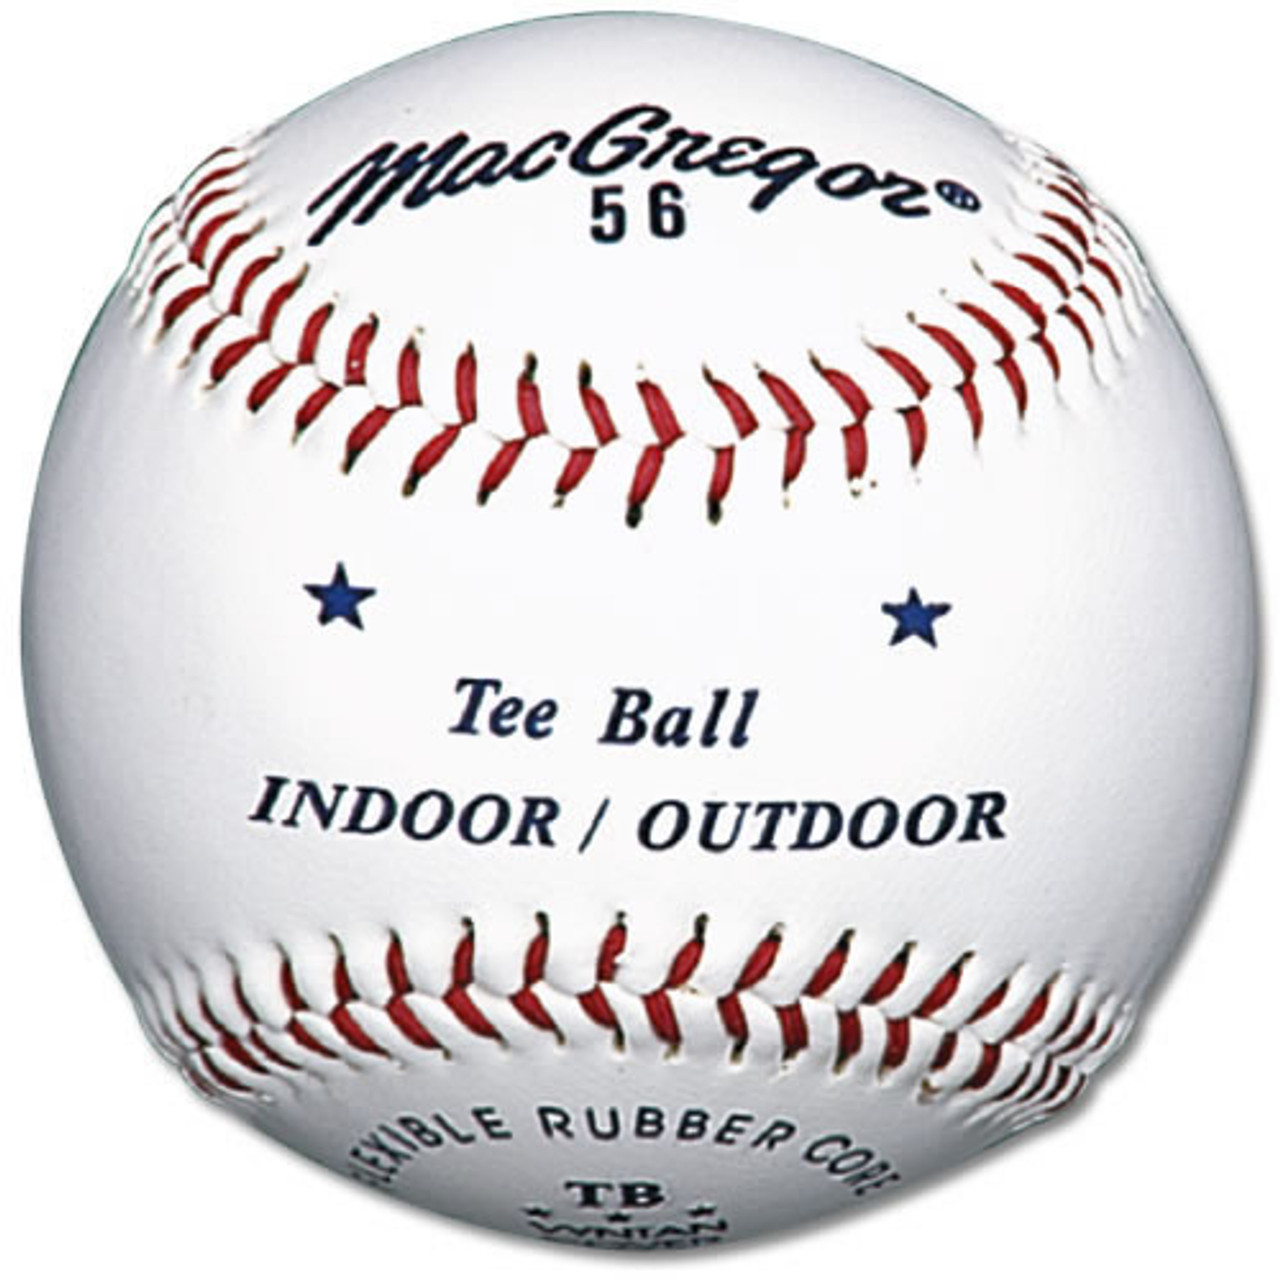 MacGregor #56 Official Indoor/Outdoor Tee Balls